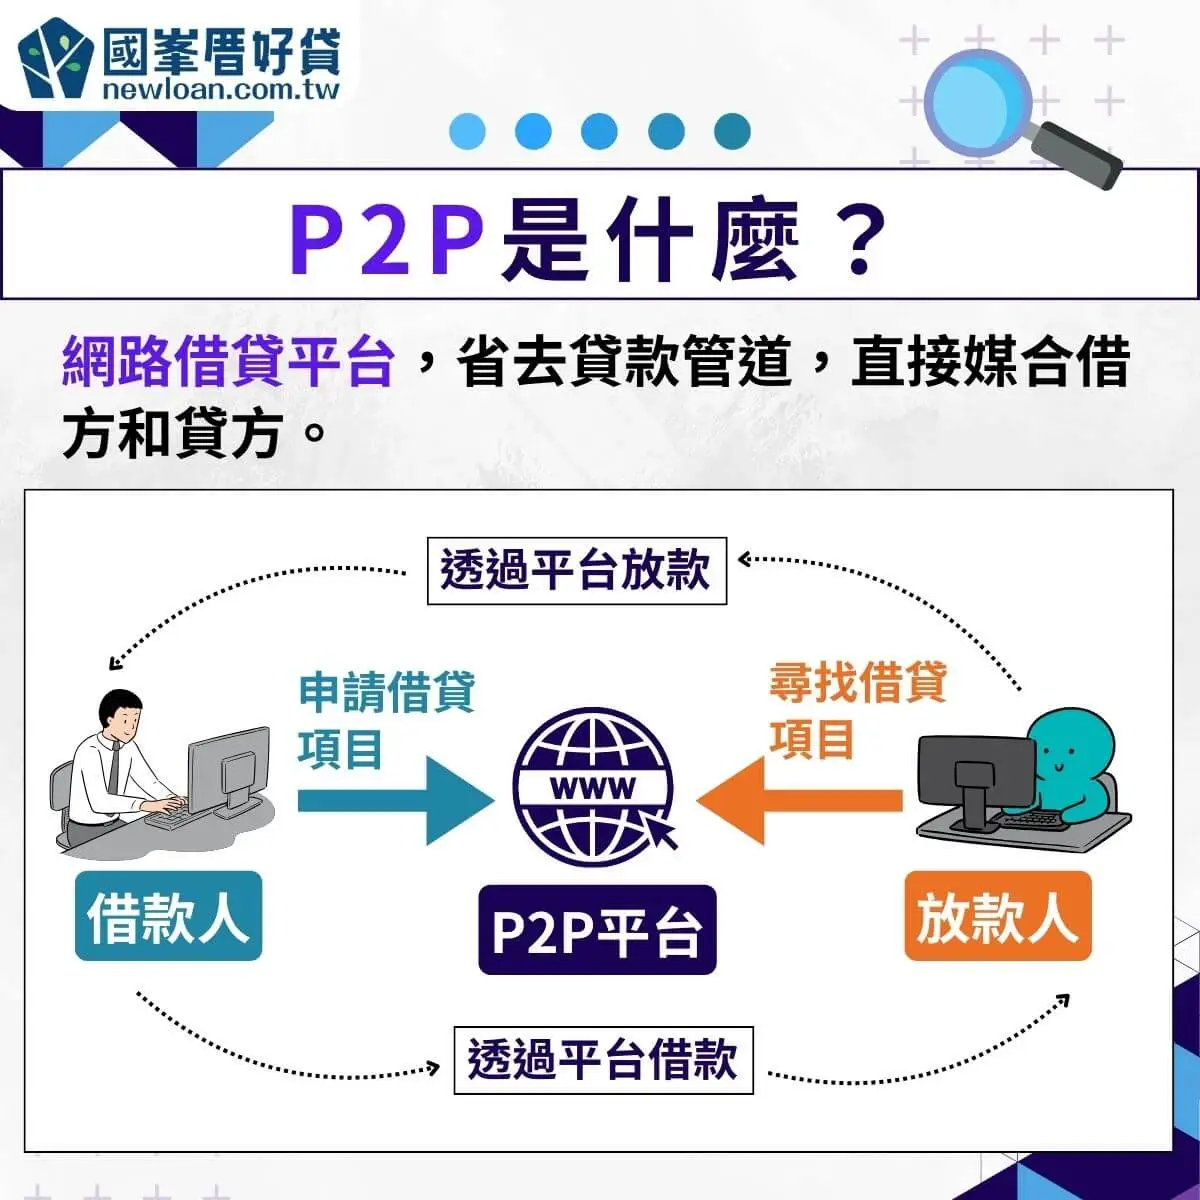 P2P是什麼